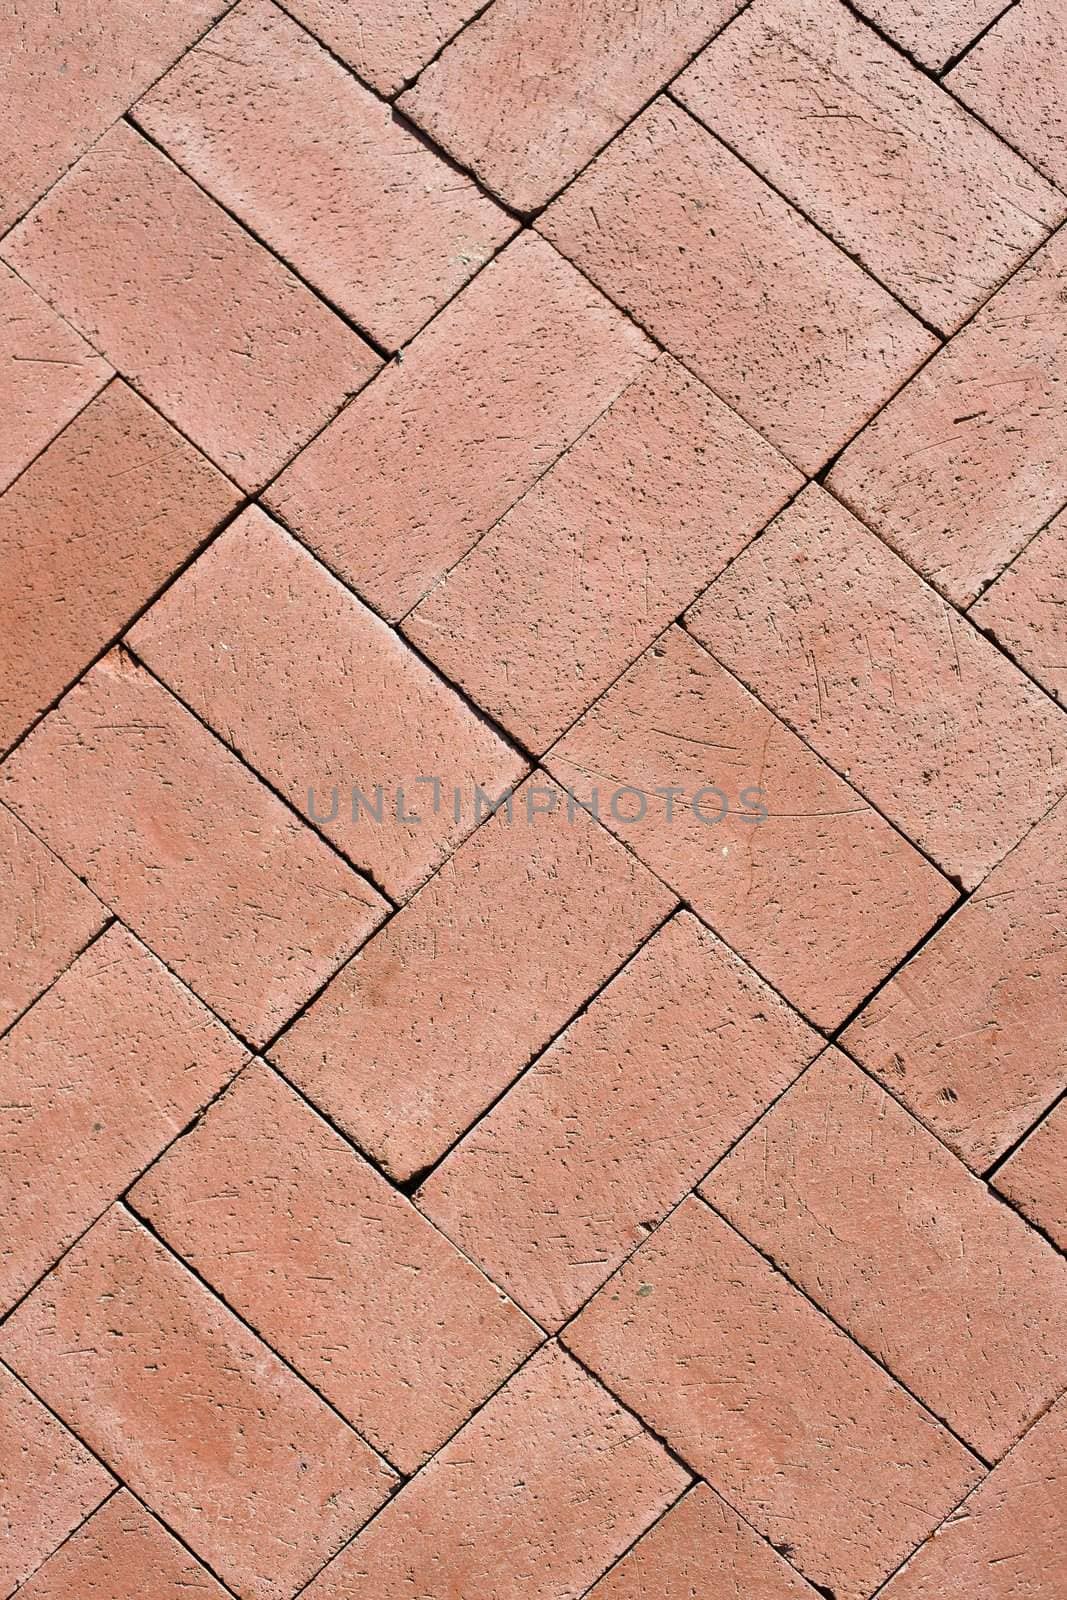 Closeup of Rectangular Red Brick Interlocking Pattern